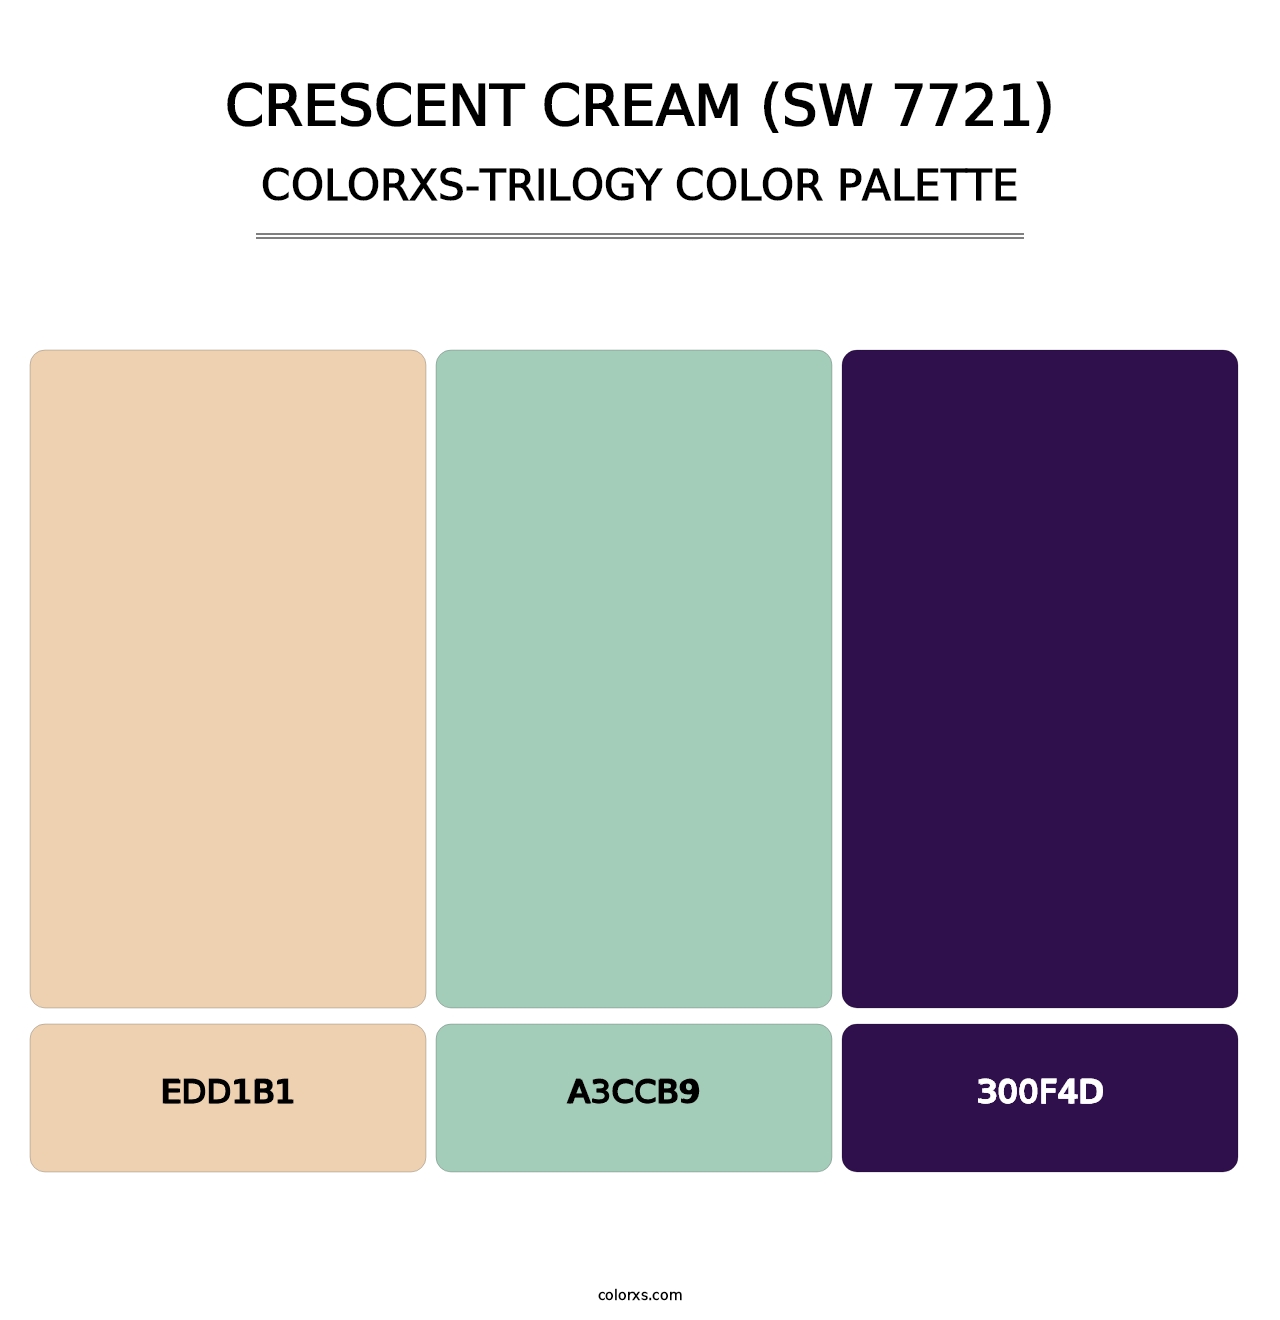 Crescent Cream (SW 7721) - Colorxs Trilogy Palette